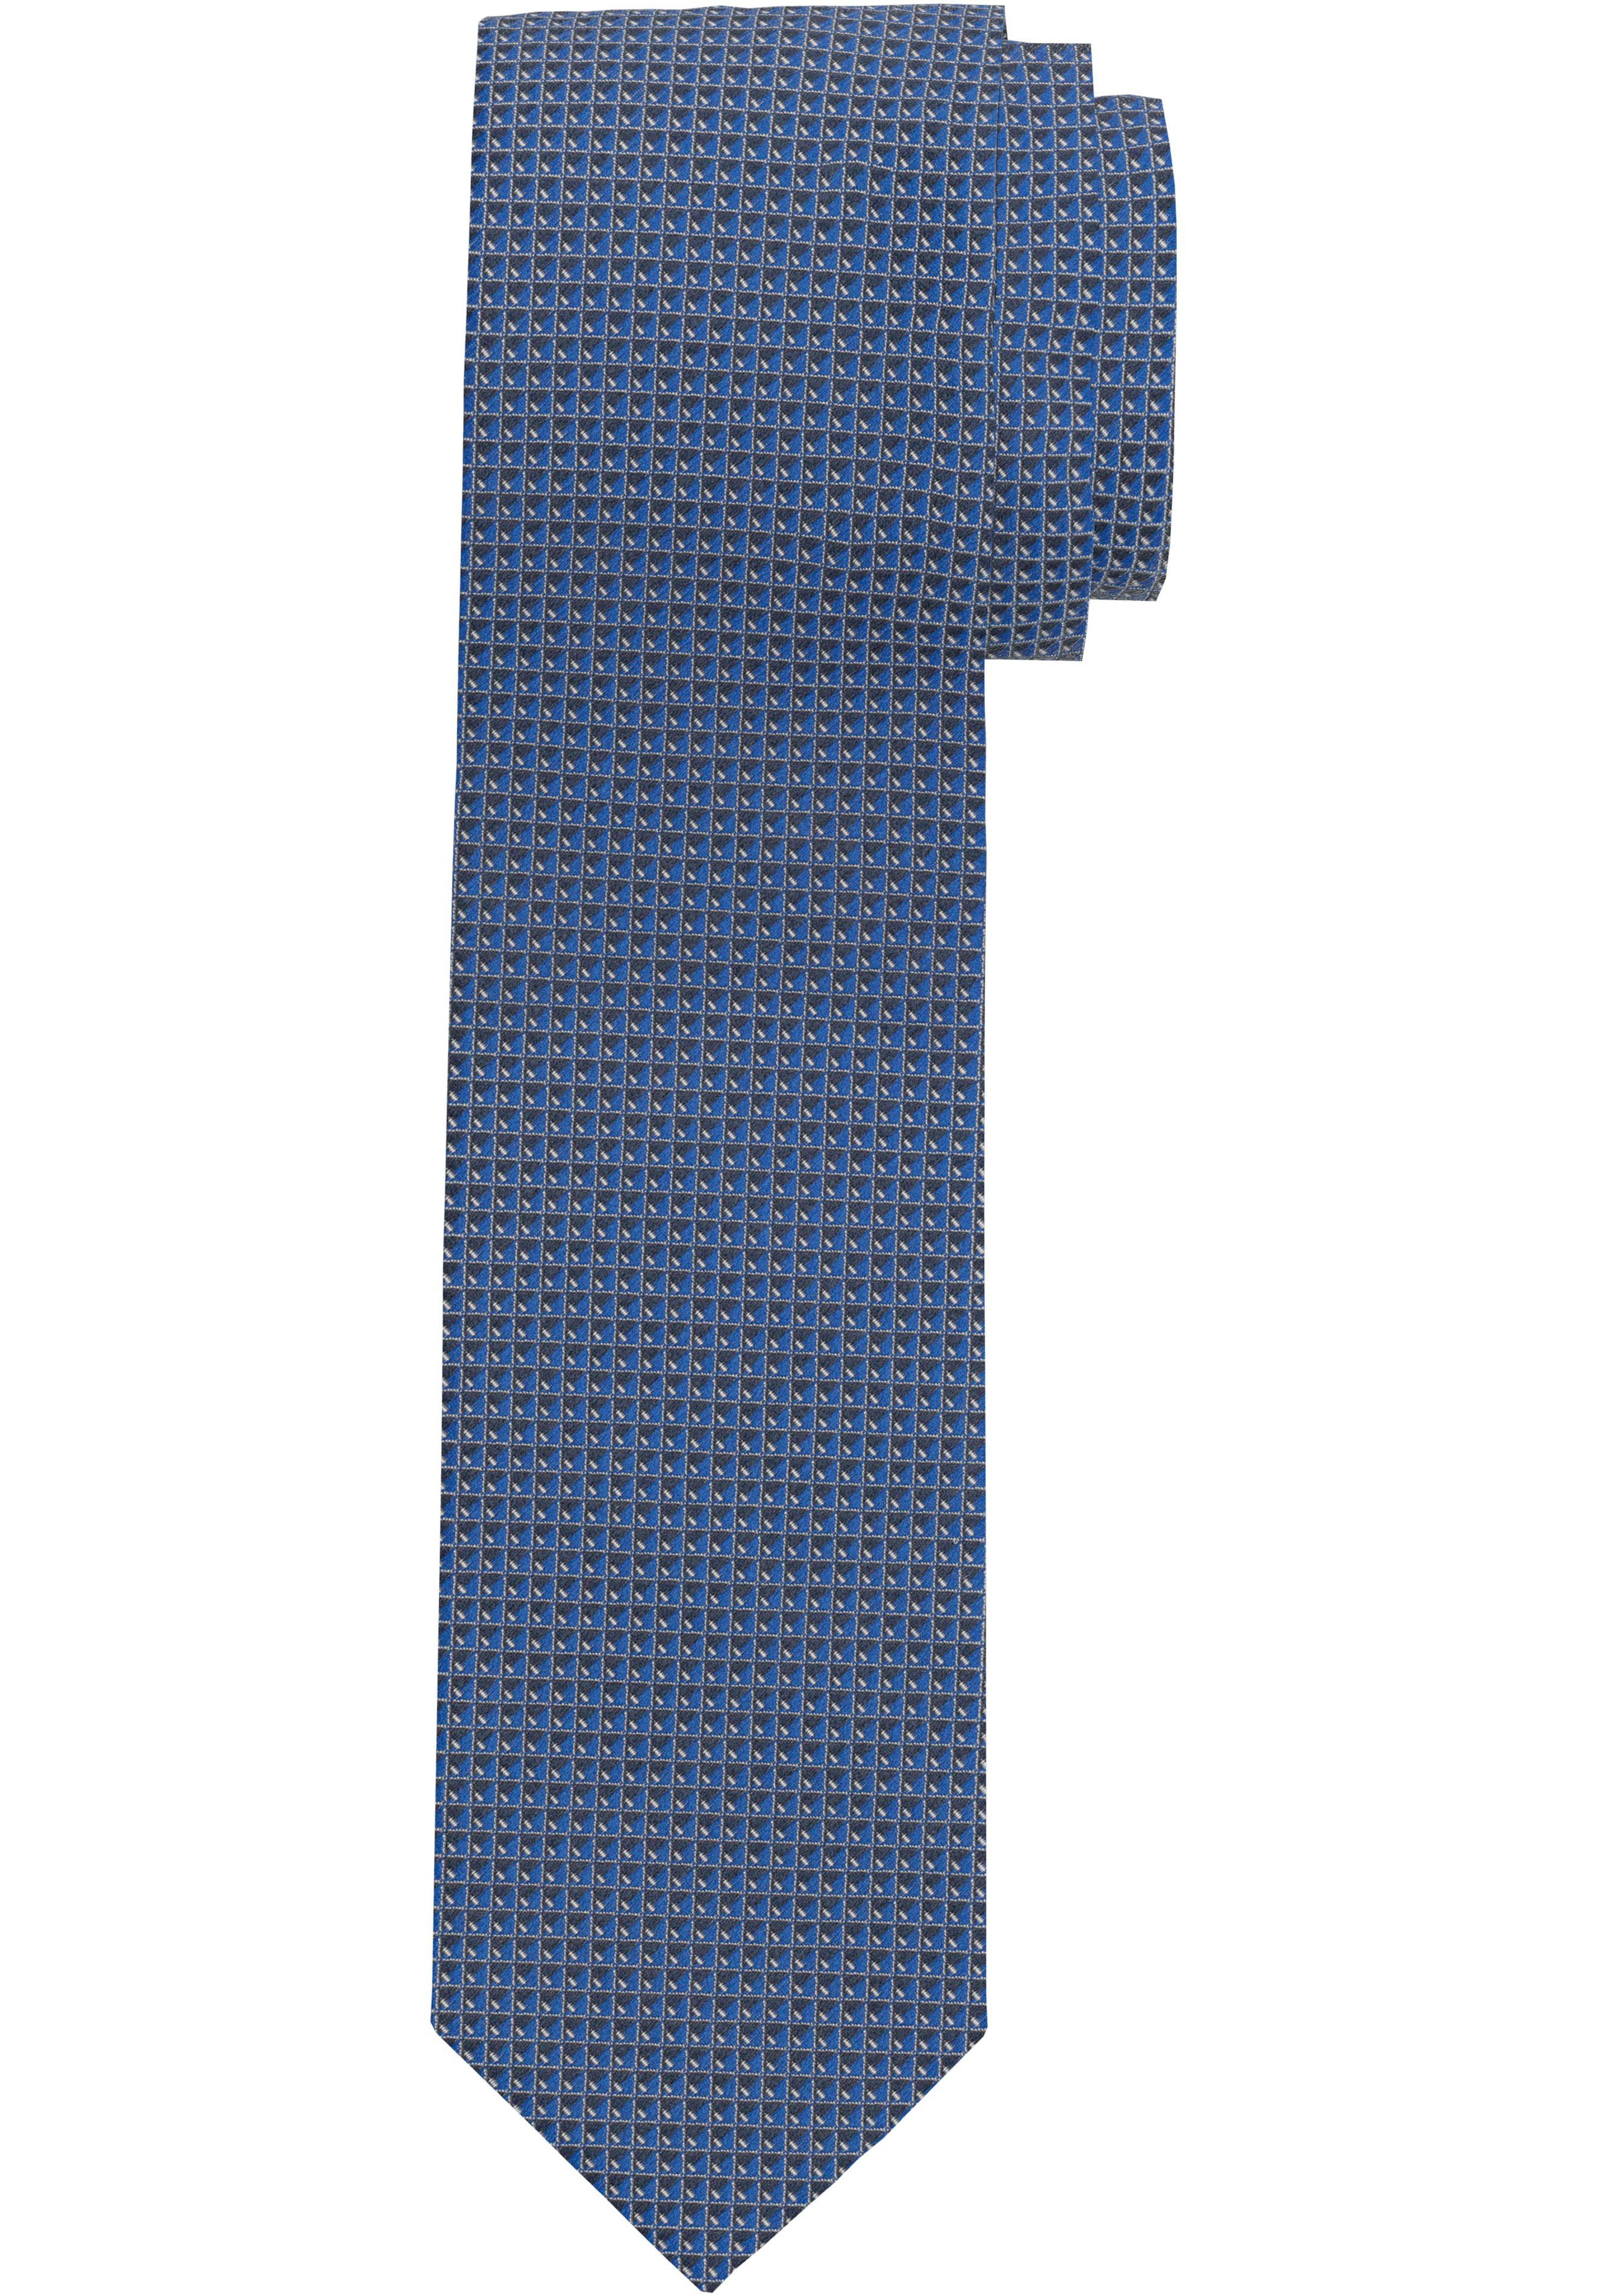 OLYMP Krawatte Strukturierte Krawatte marine